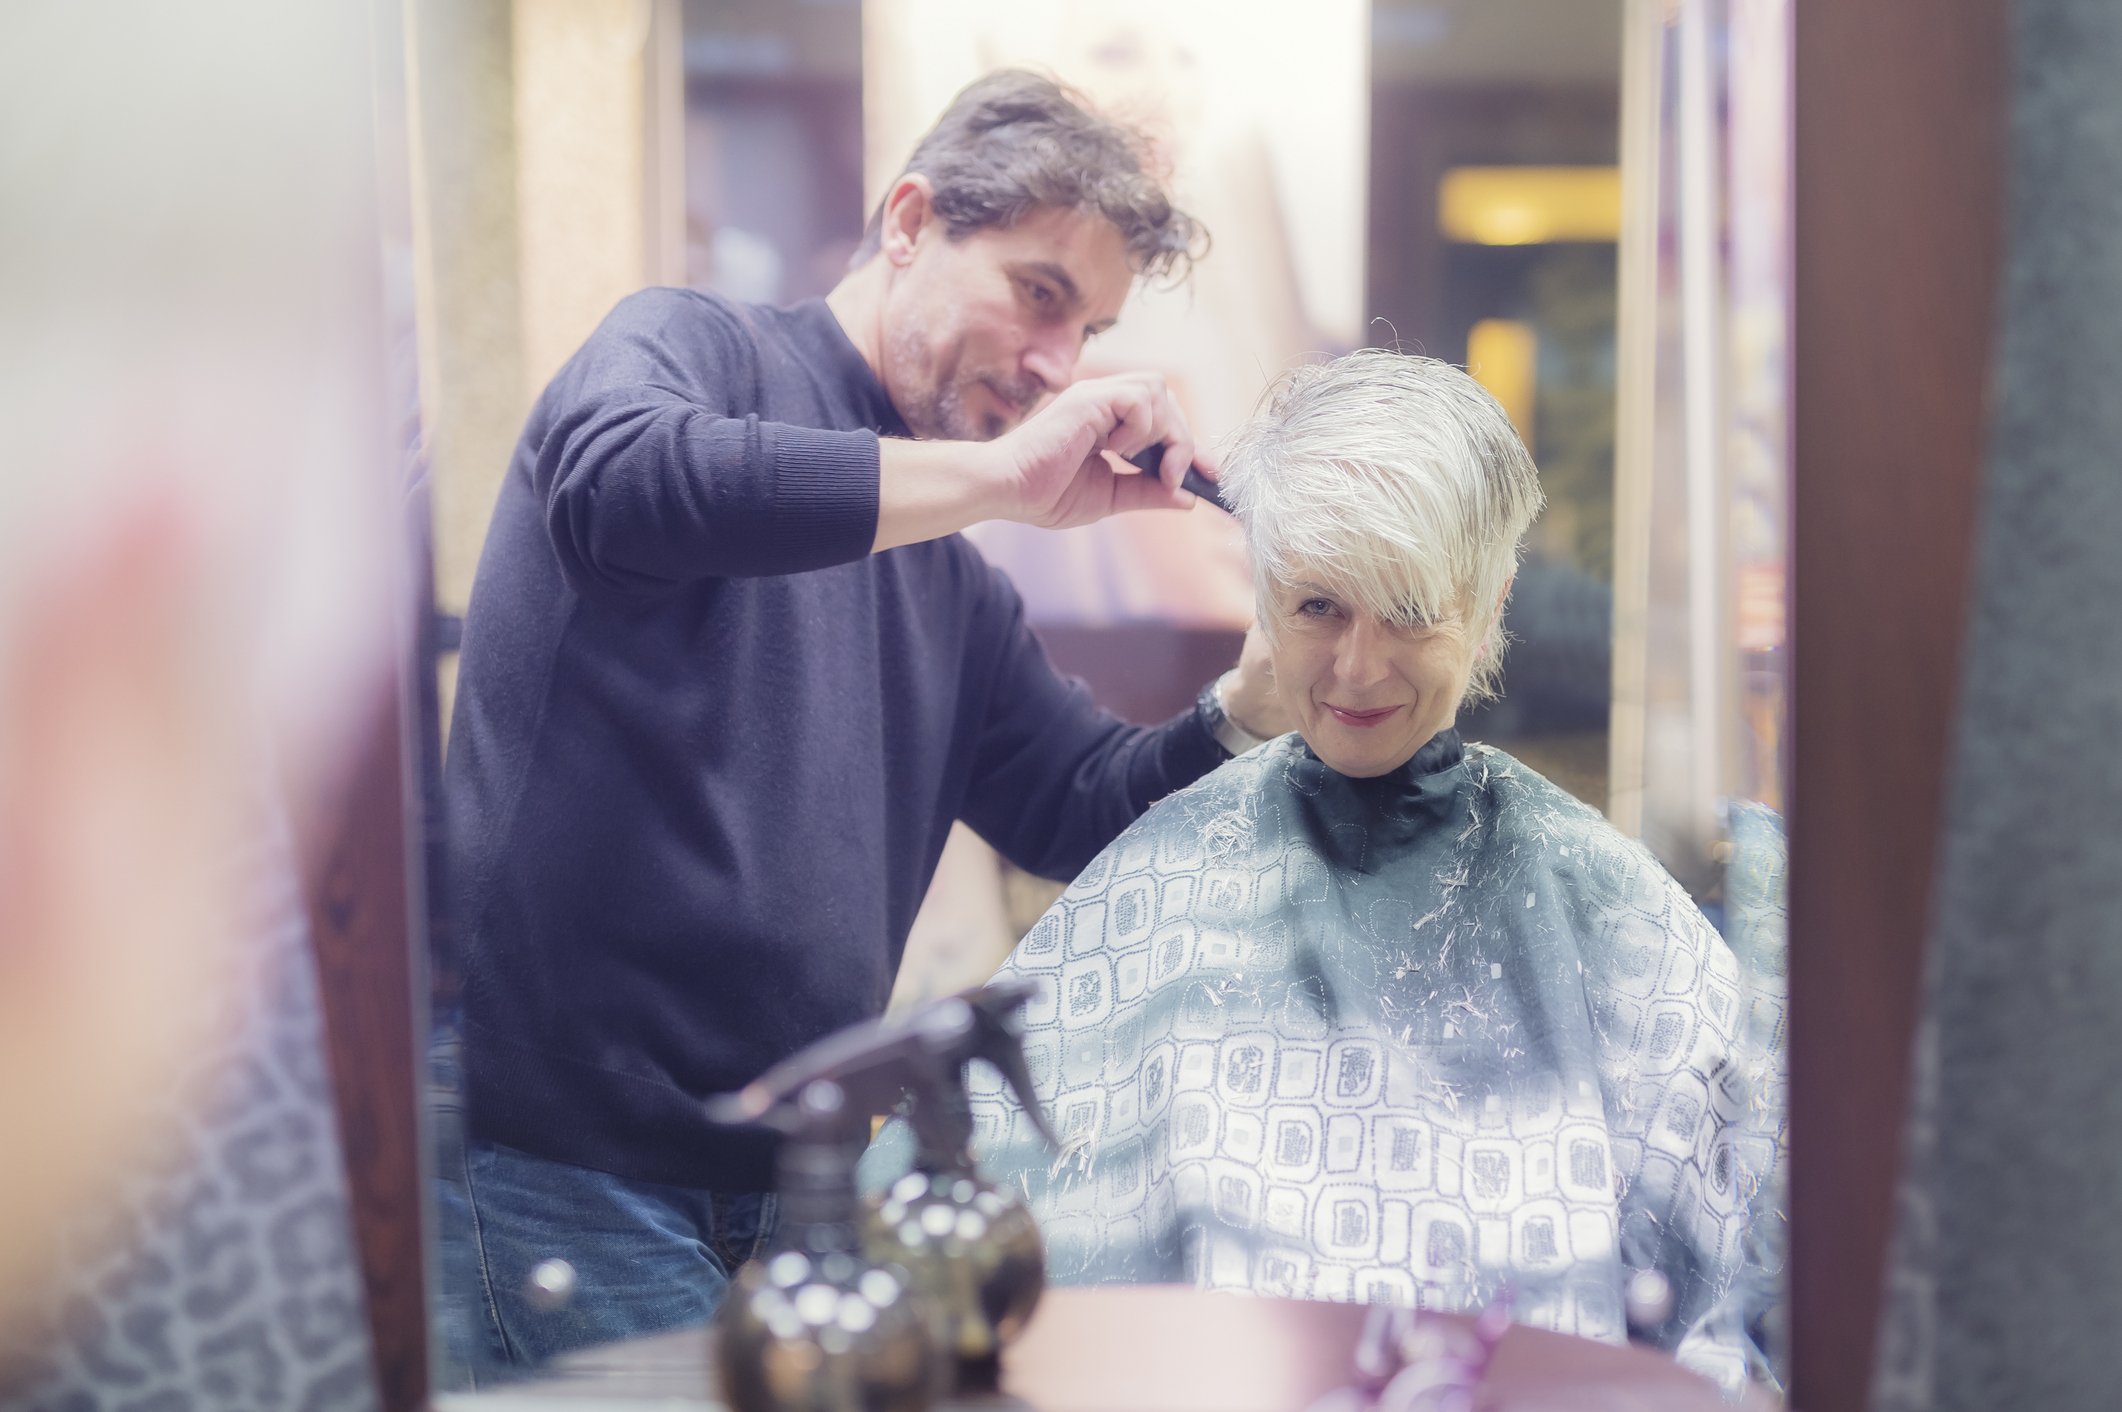 Une femme dans un salon de coiffure | Source : Getty Images